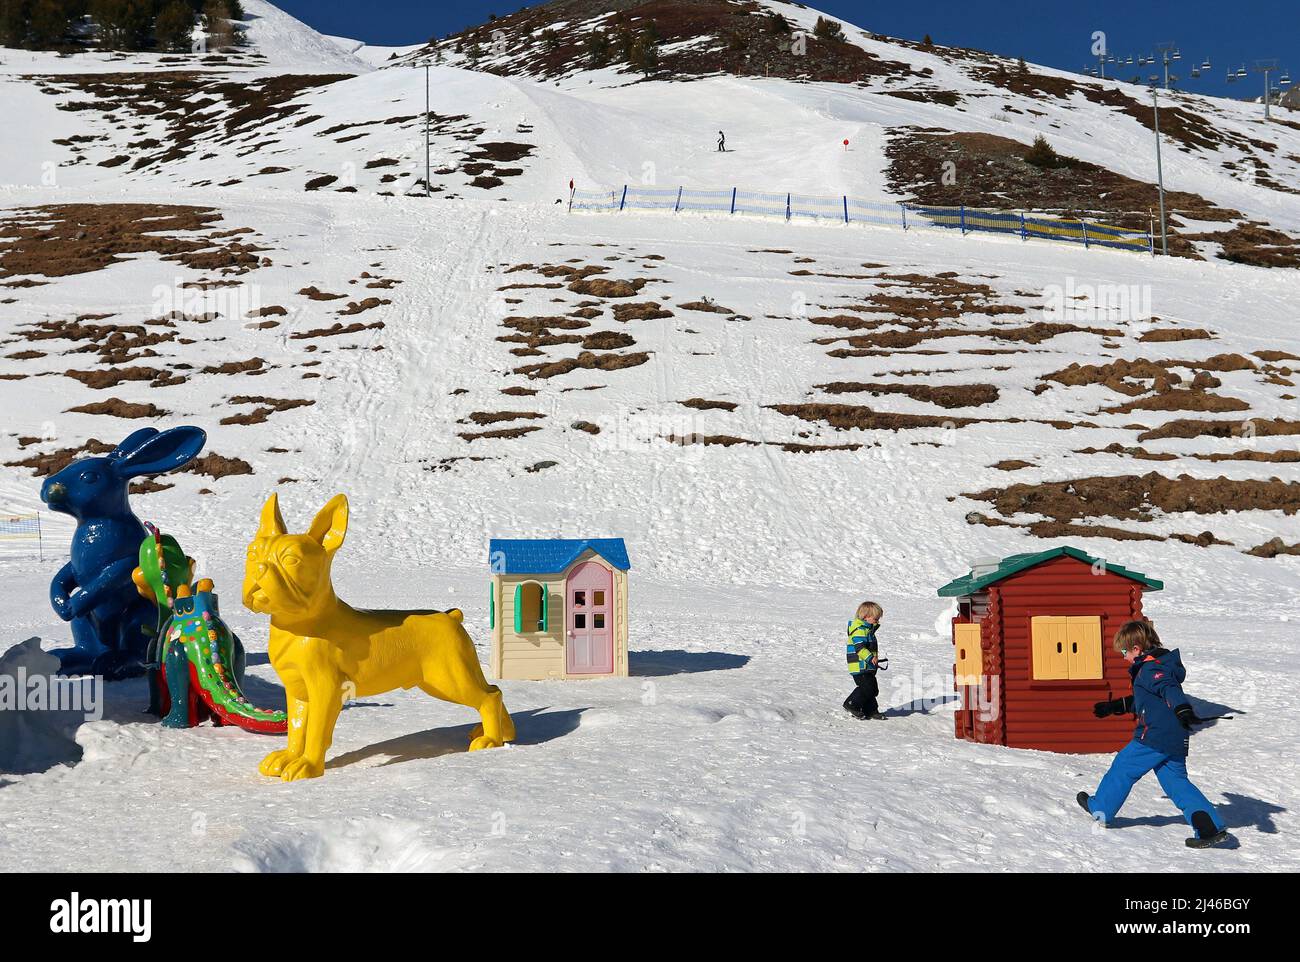 La colorata area giochi per bambini si trova nella stazione sciistica di Kühtai, nelle Alpi austriache, nei pressi di Innsbruck; gli sciatori sulle piste si trovano sullo sfondo Foto Stock